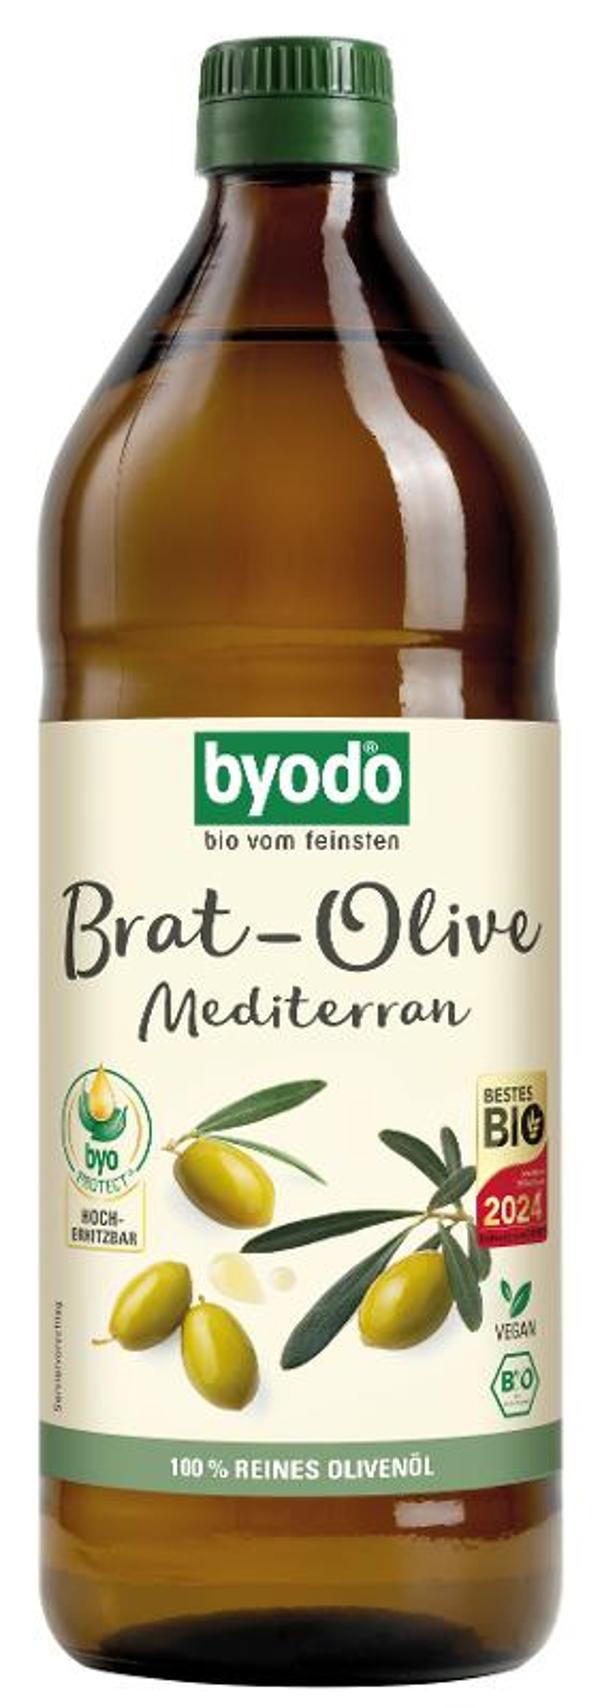 Produktfoto zu Brat-Olive Mediterran 750ml